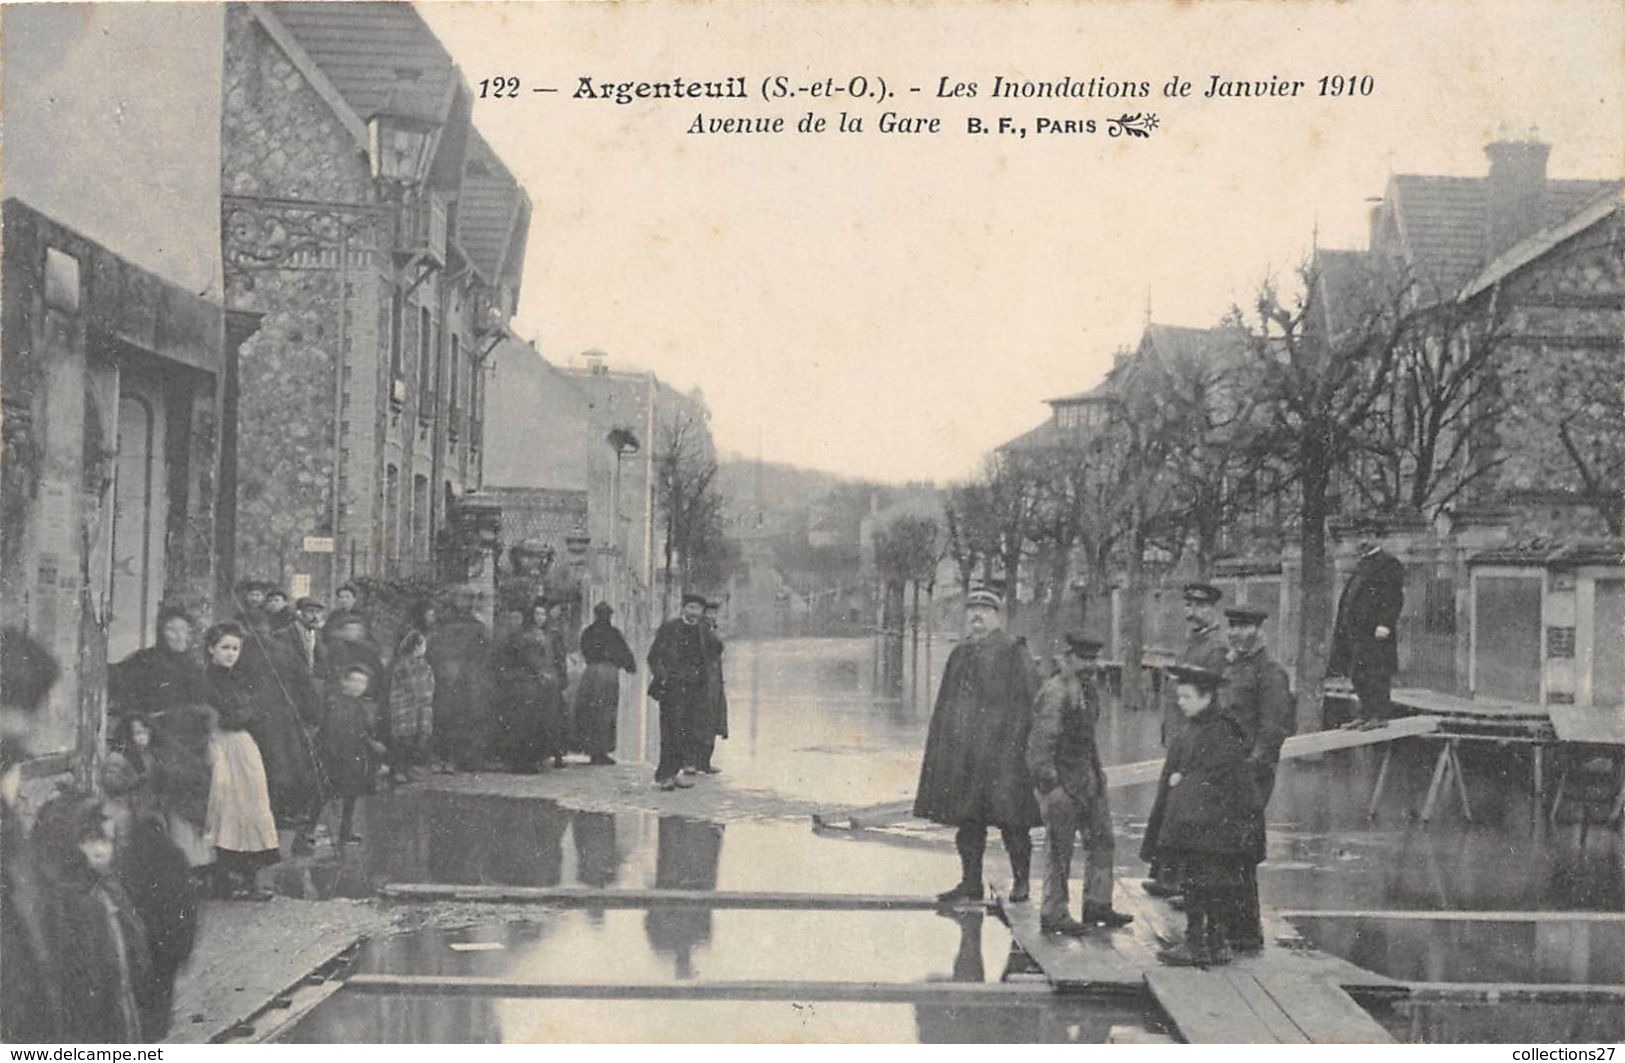 95-ARGENTEUIL- LES INONDATIONS DE JANVIER 1910, AVENUE DE LA GARE - Argenteuil